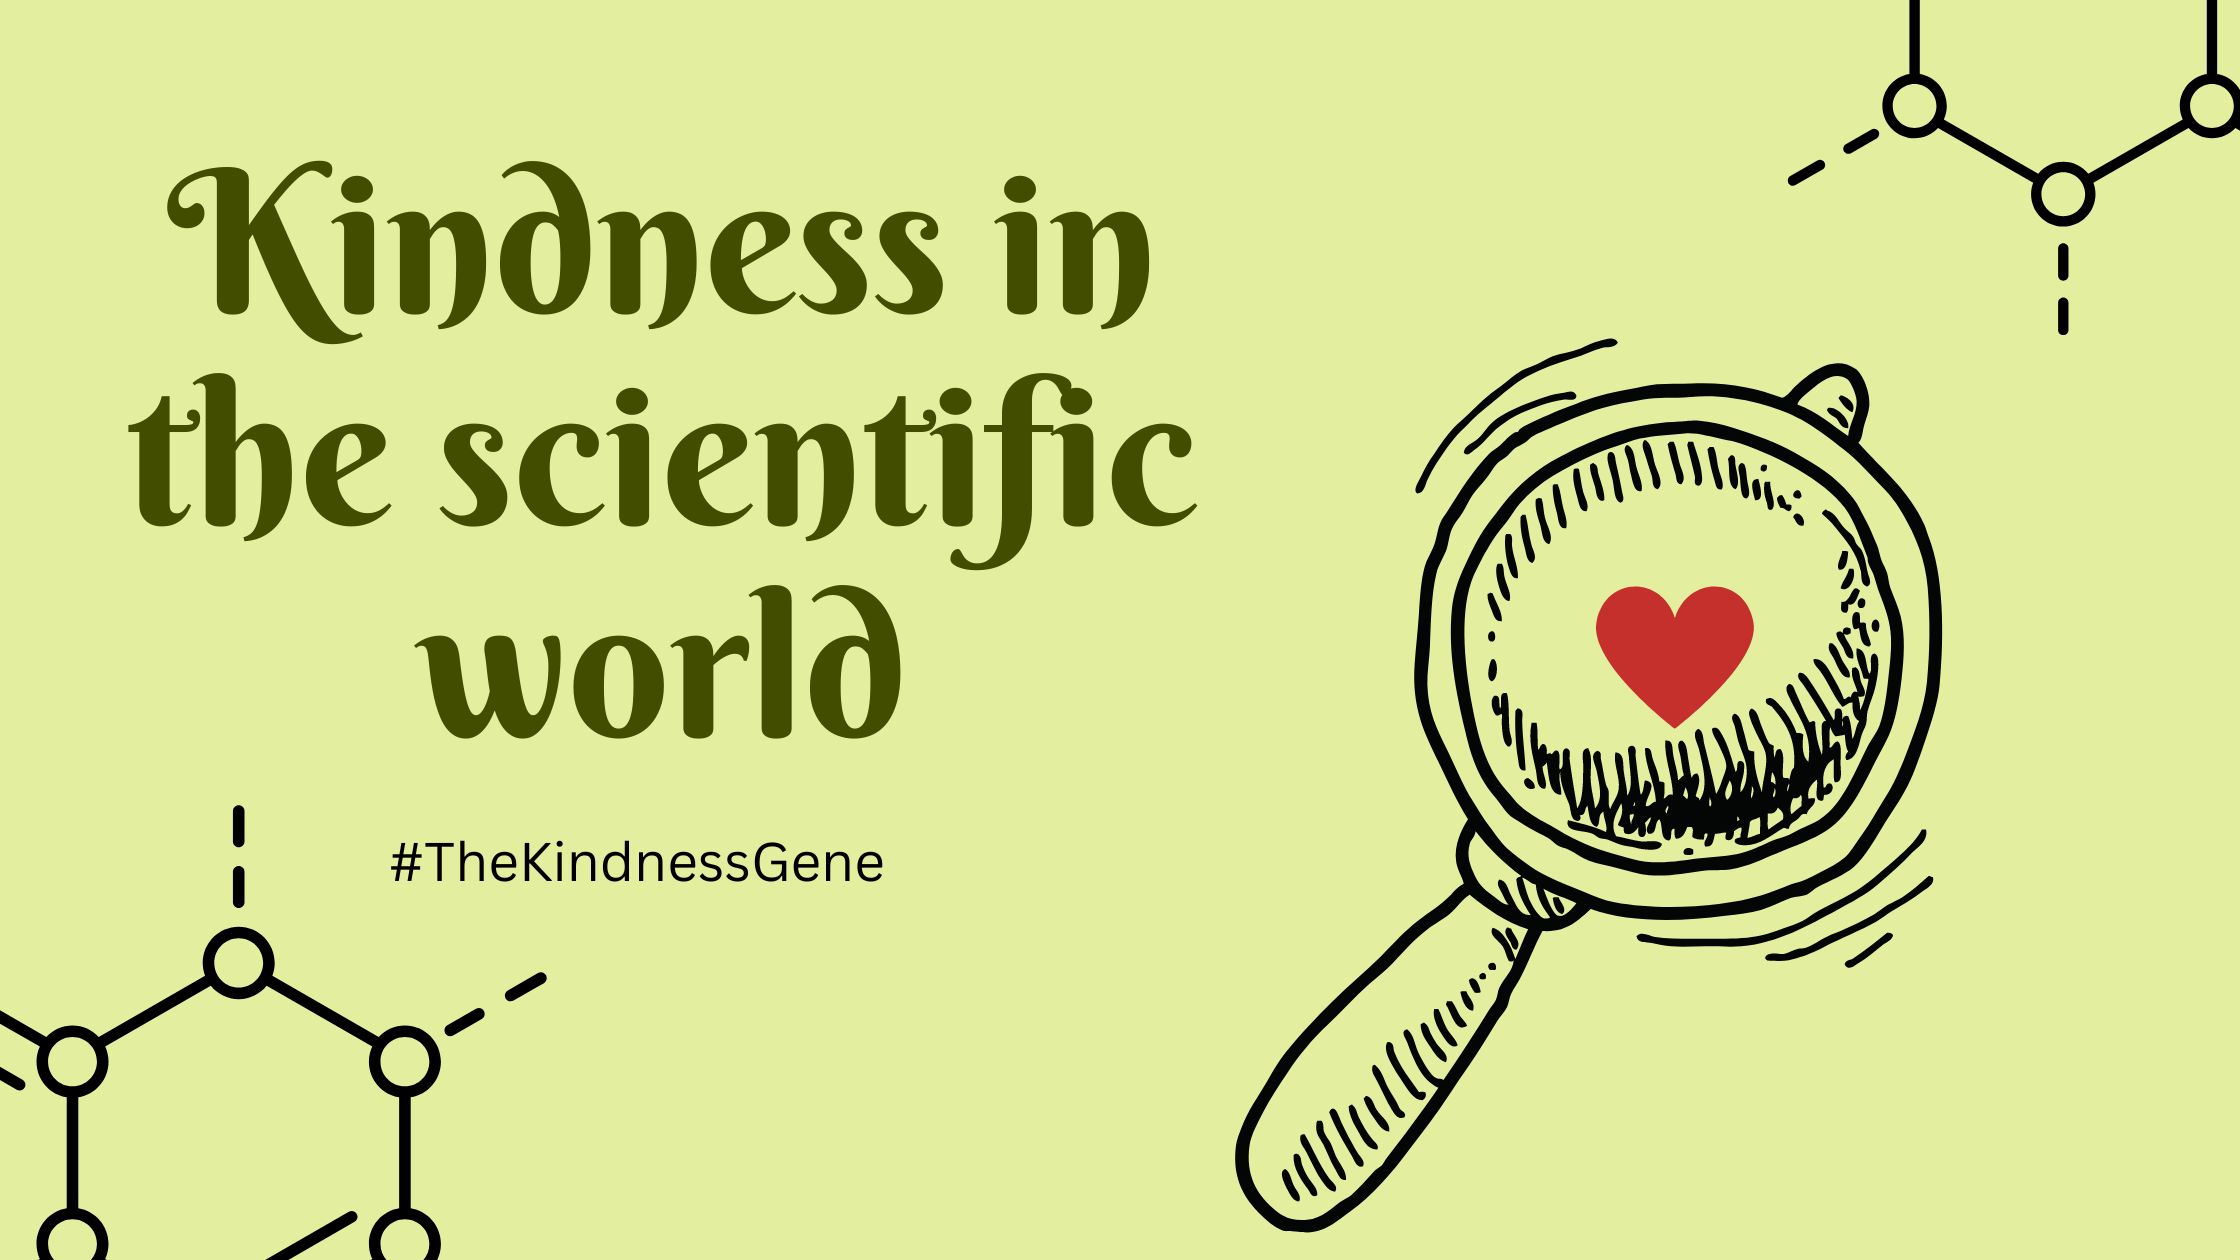 Kindness in the scientific world